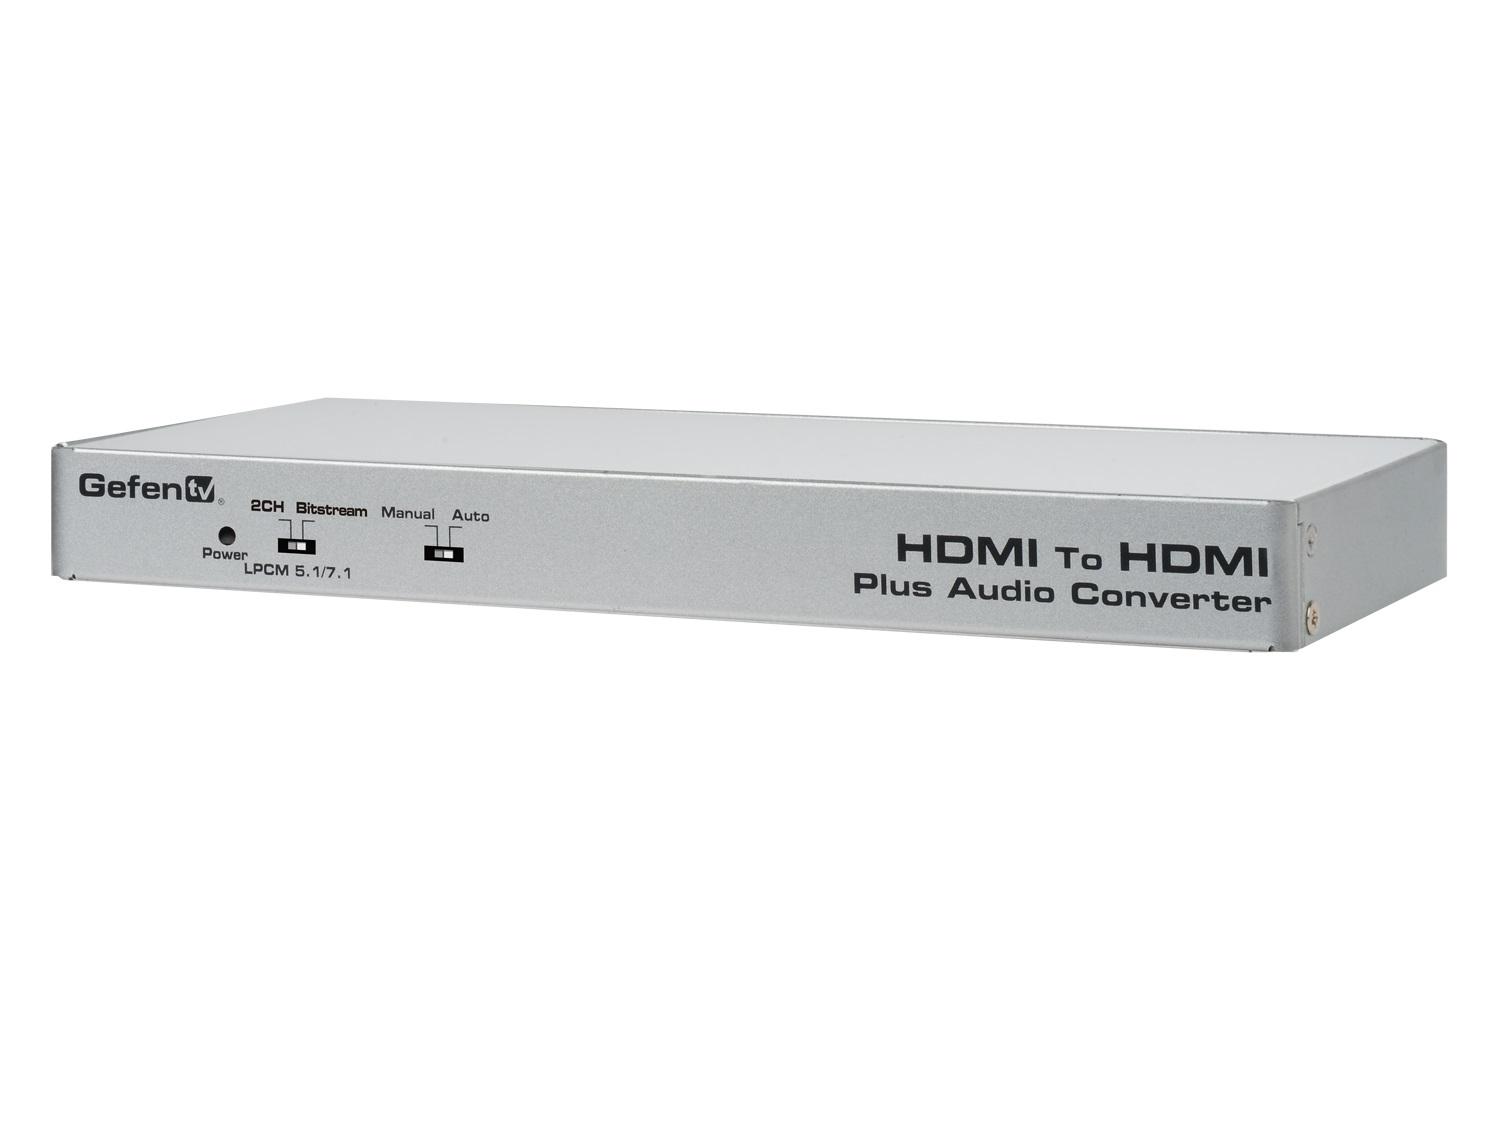 Gefen GTV-HDMI-2-HDMIAUD GefenTV HDMI to HDMI Plus Audio Converter